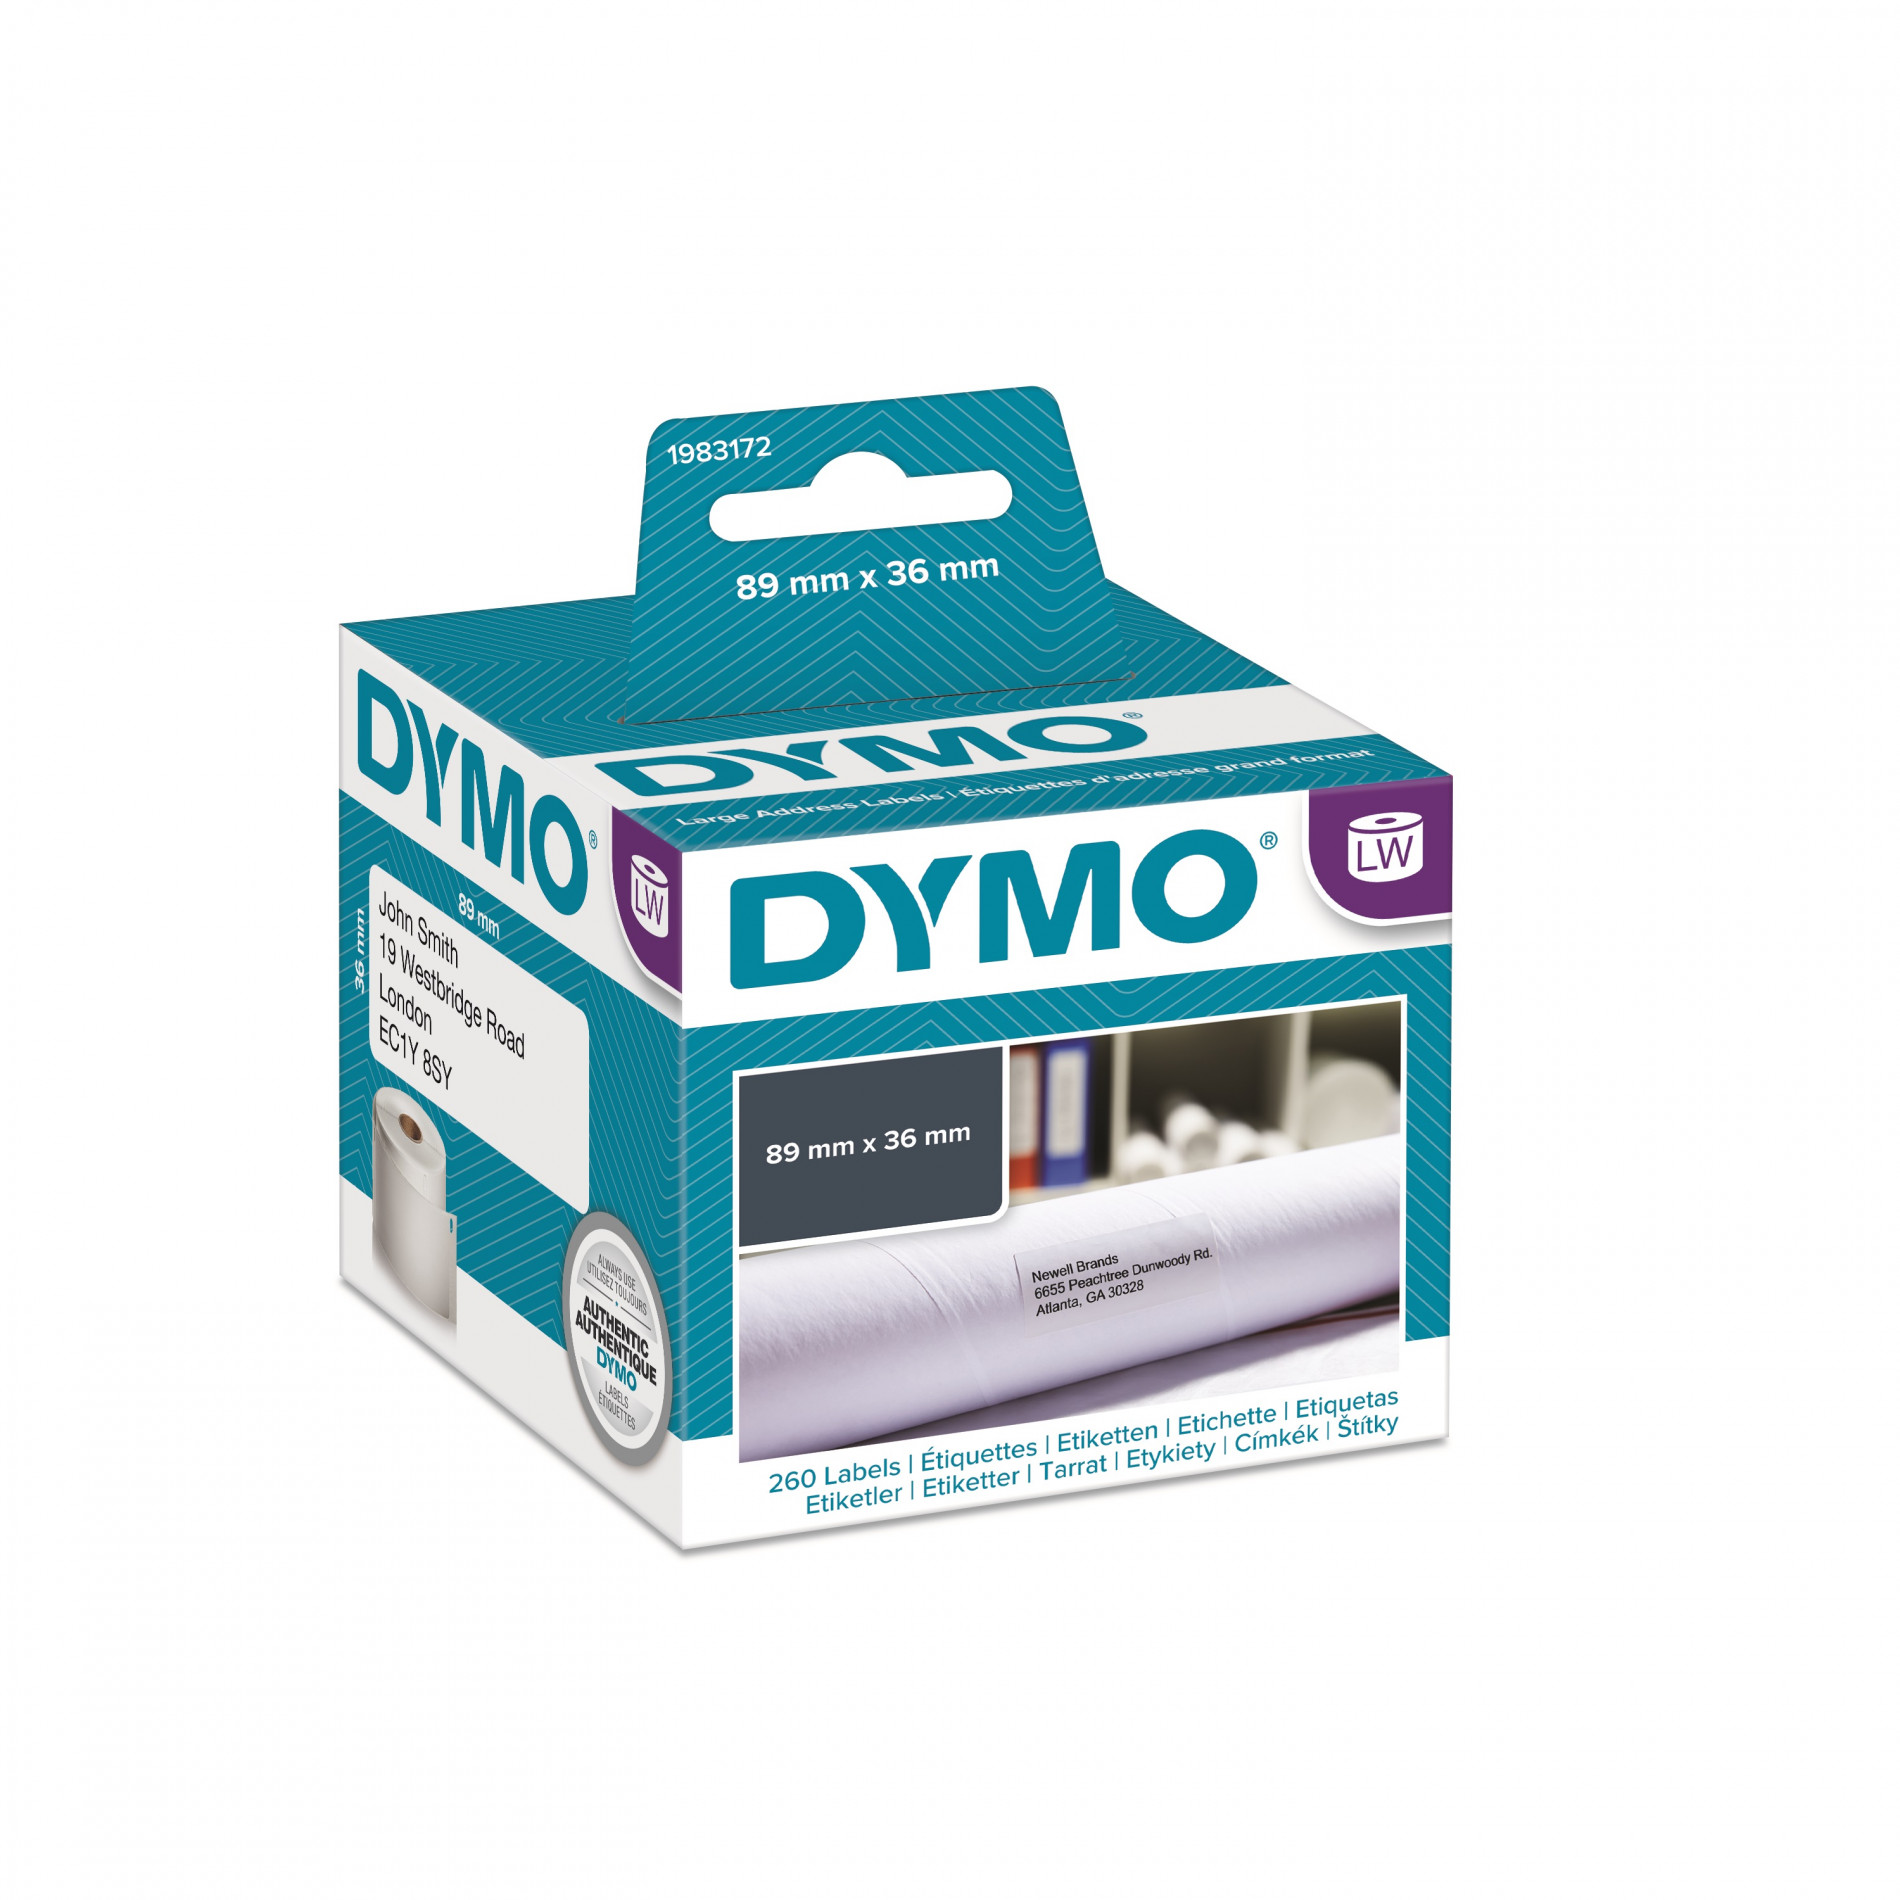 Dymo этикетки. 1983172 Dymo. Адресные этикетки Dymo для принтера Dymo LABELWRITER. Этикетки Dymo s0722460. S0718060 Dymo.